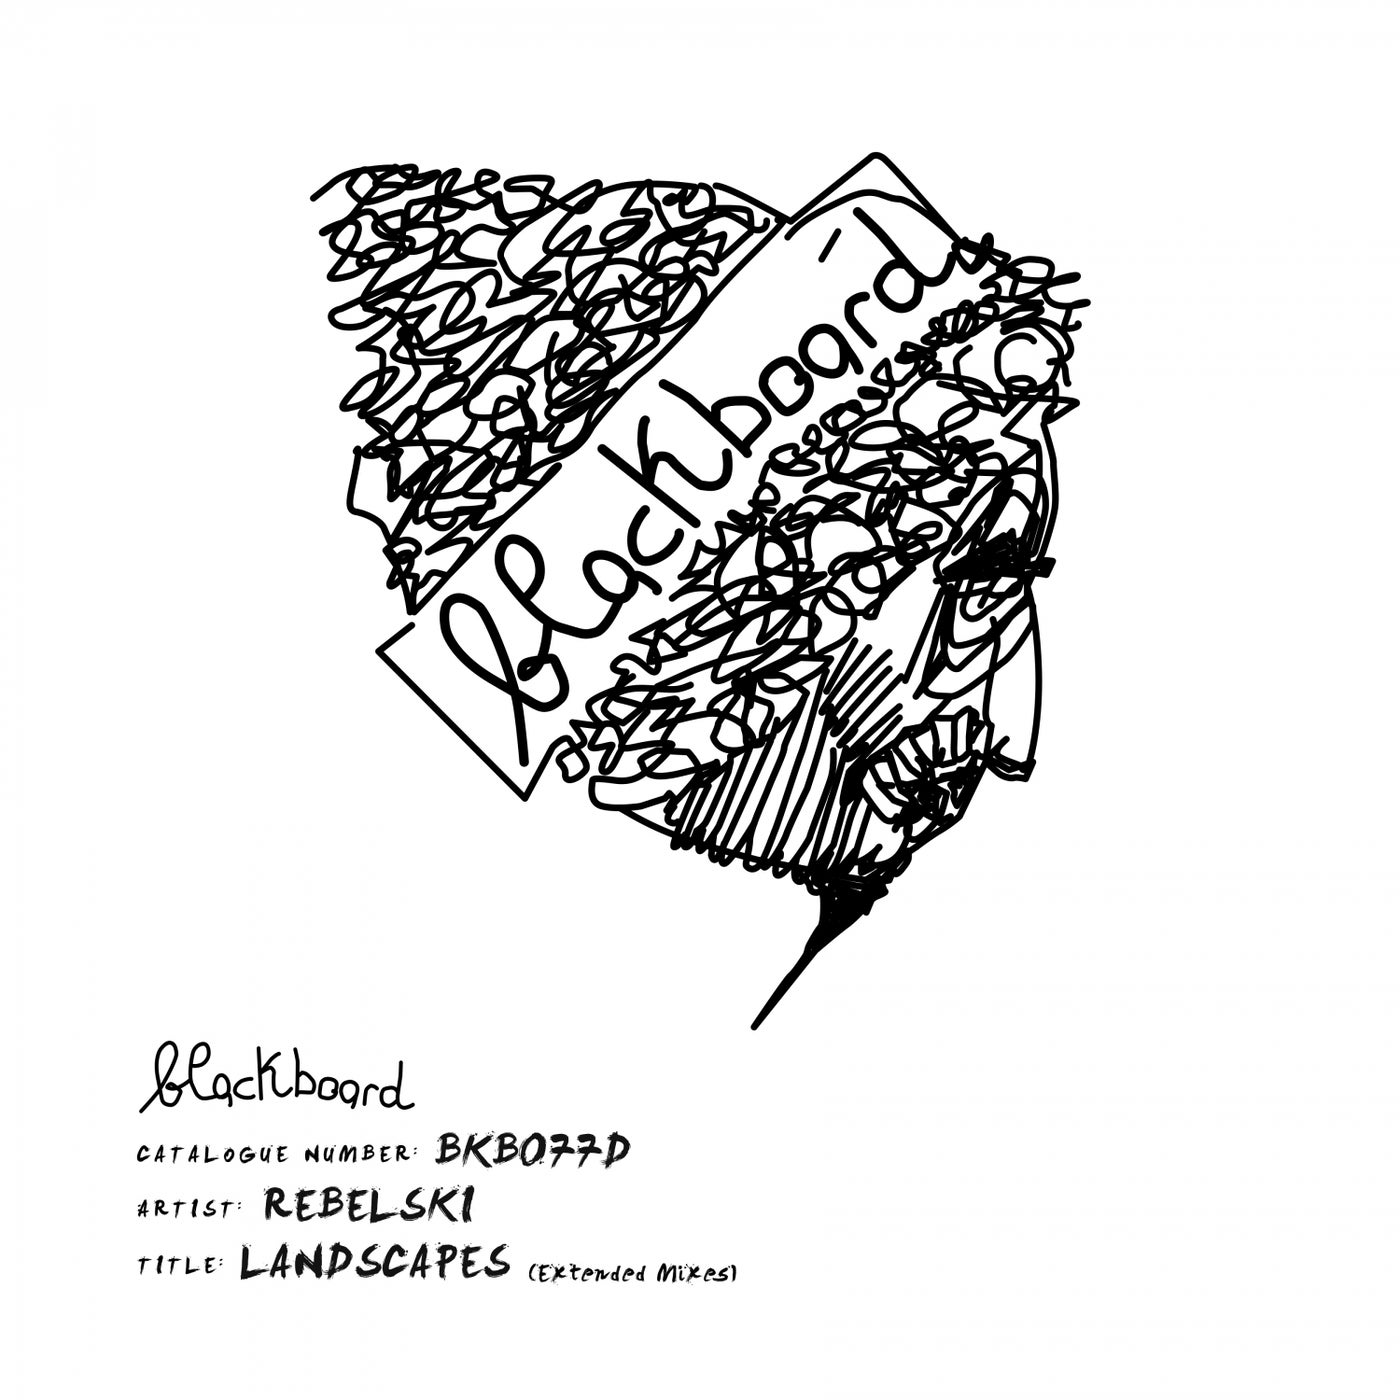 Rebelski – Landscapes (Extended Mixes) [BKB077D]